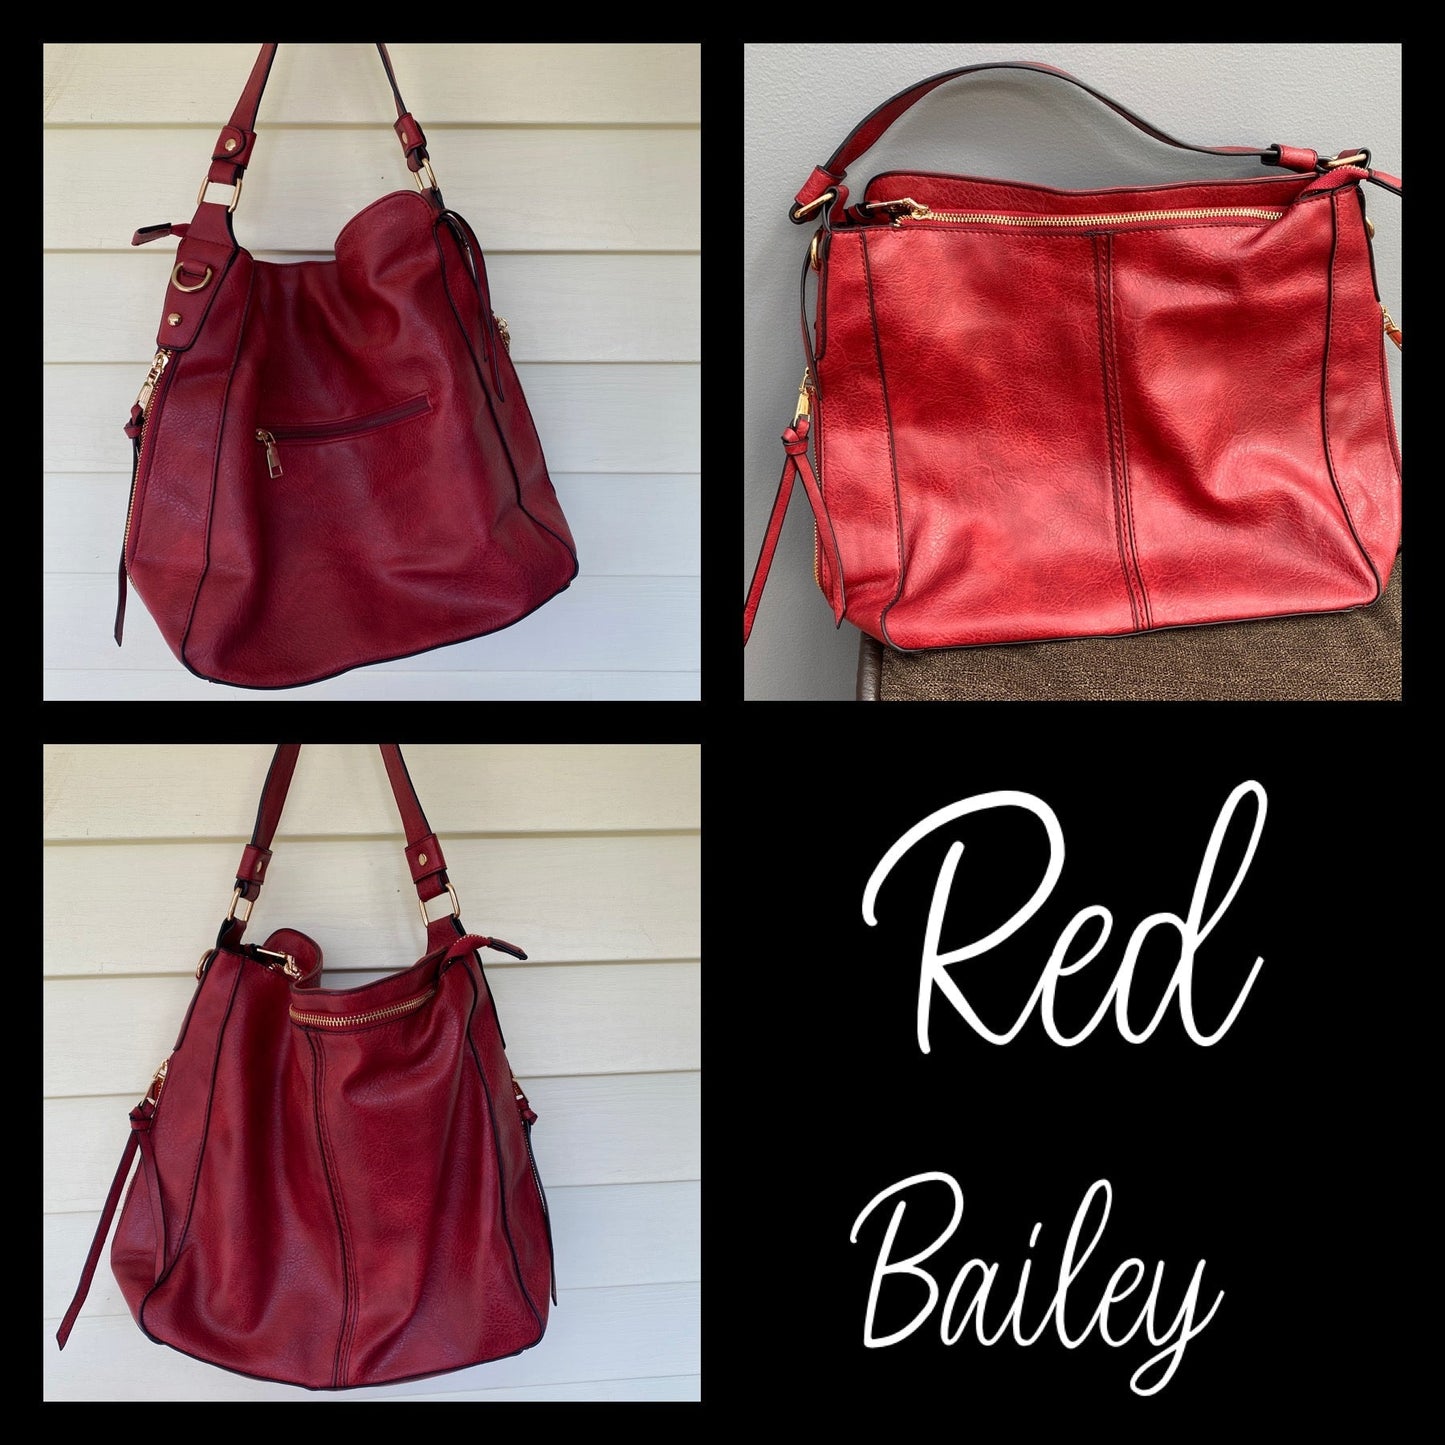 Bailey Crossbody Purse Handbag